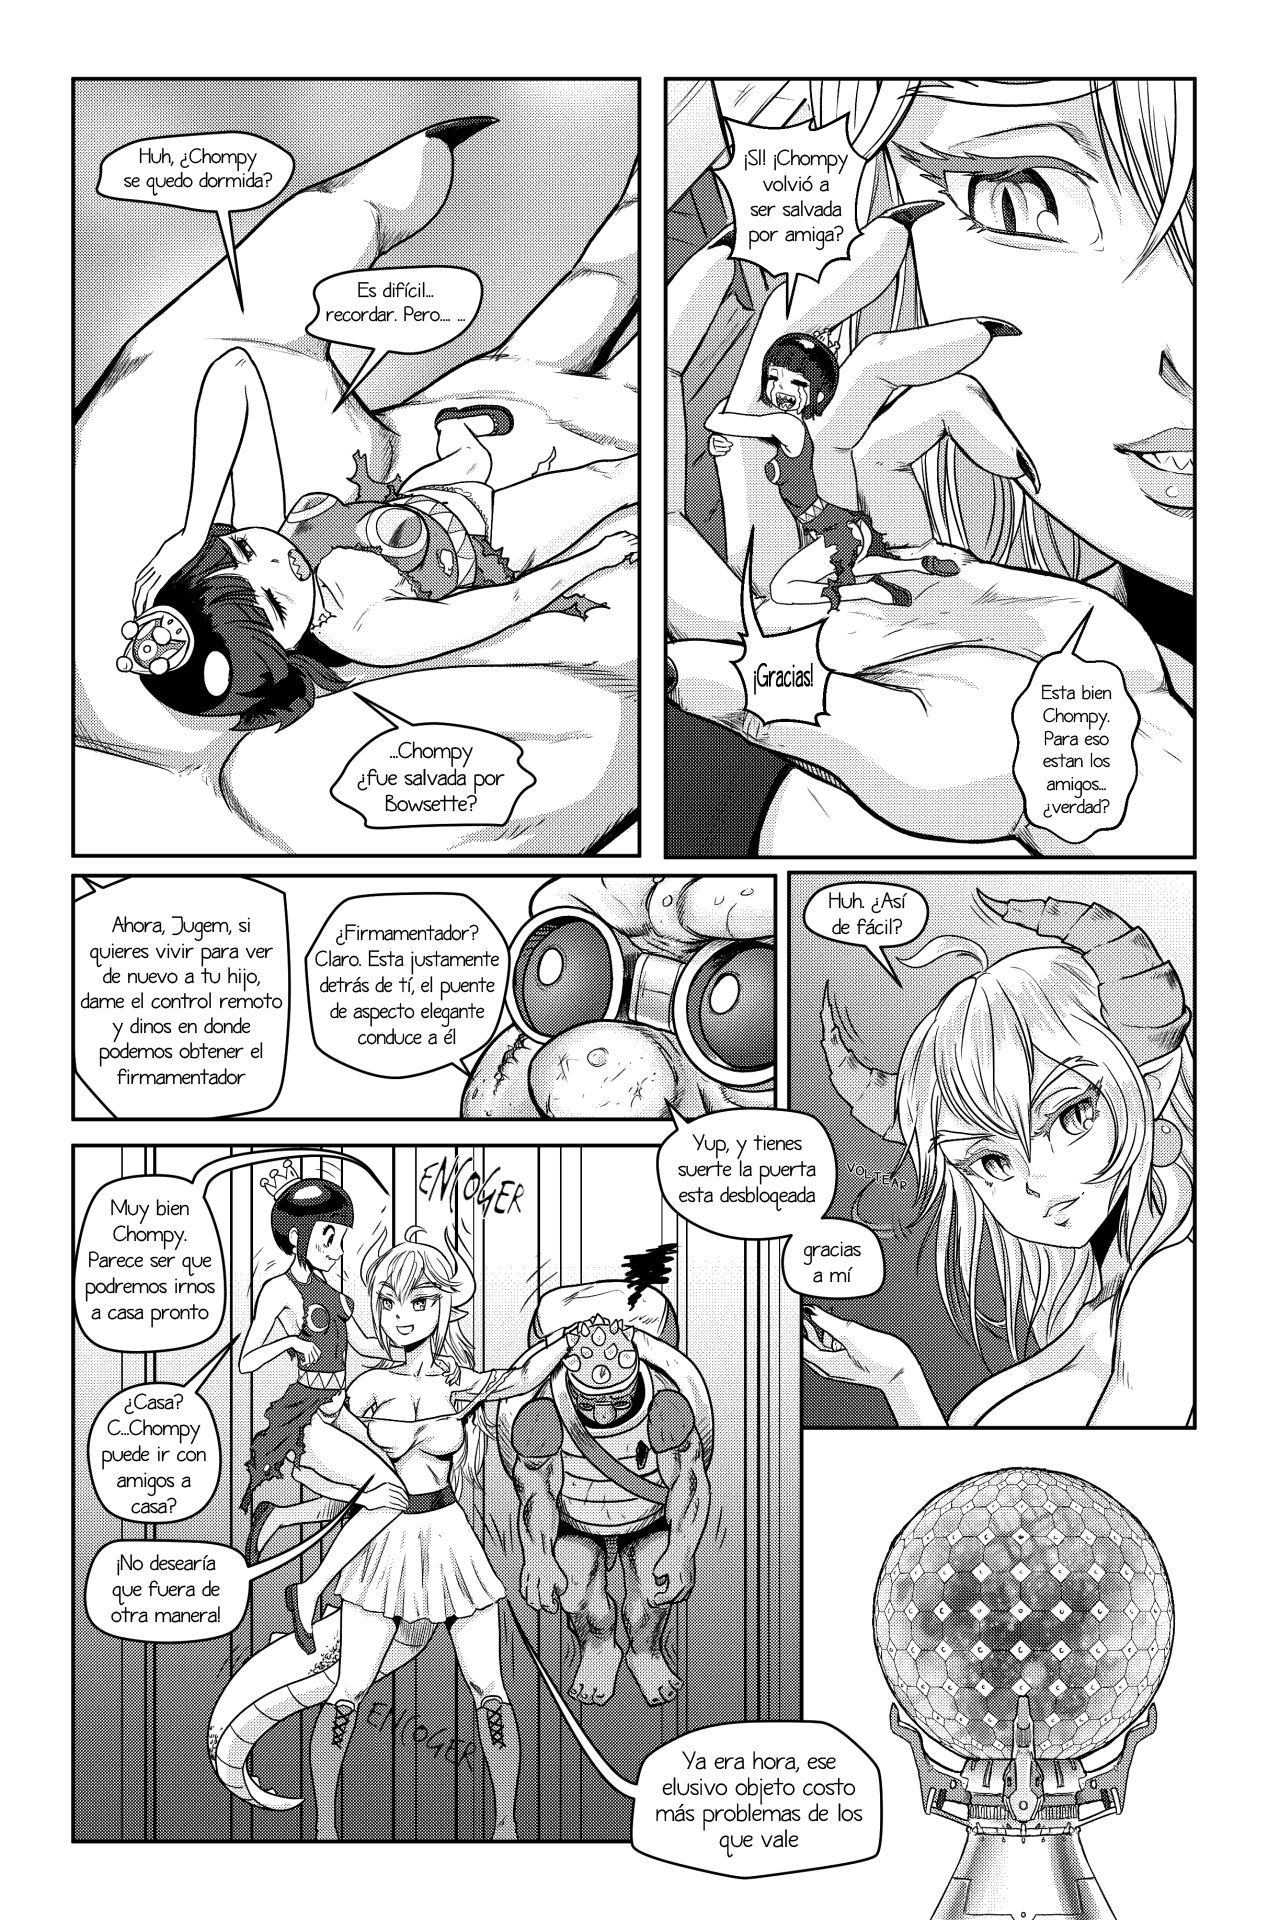 [Pencils] Bowsette Saga Vol.1 Y Vol.2 Completos - Vol.3 En Progreso (Mario Bros.) [Spanish] by Arkoniusx 53